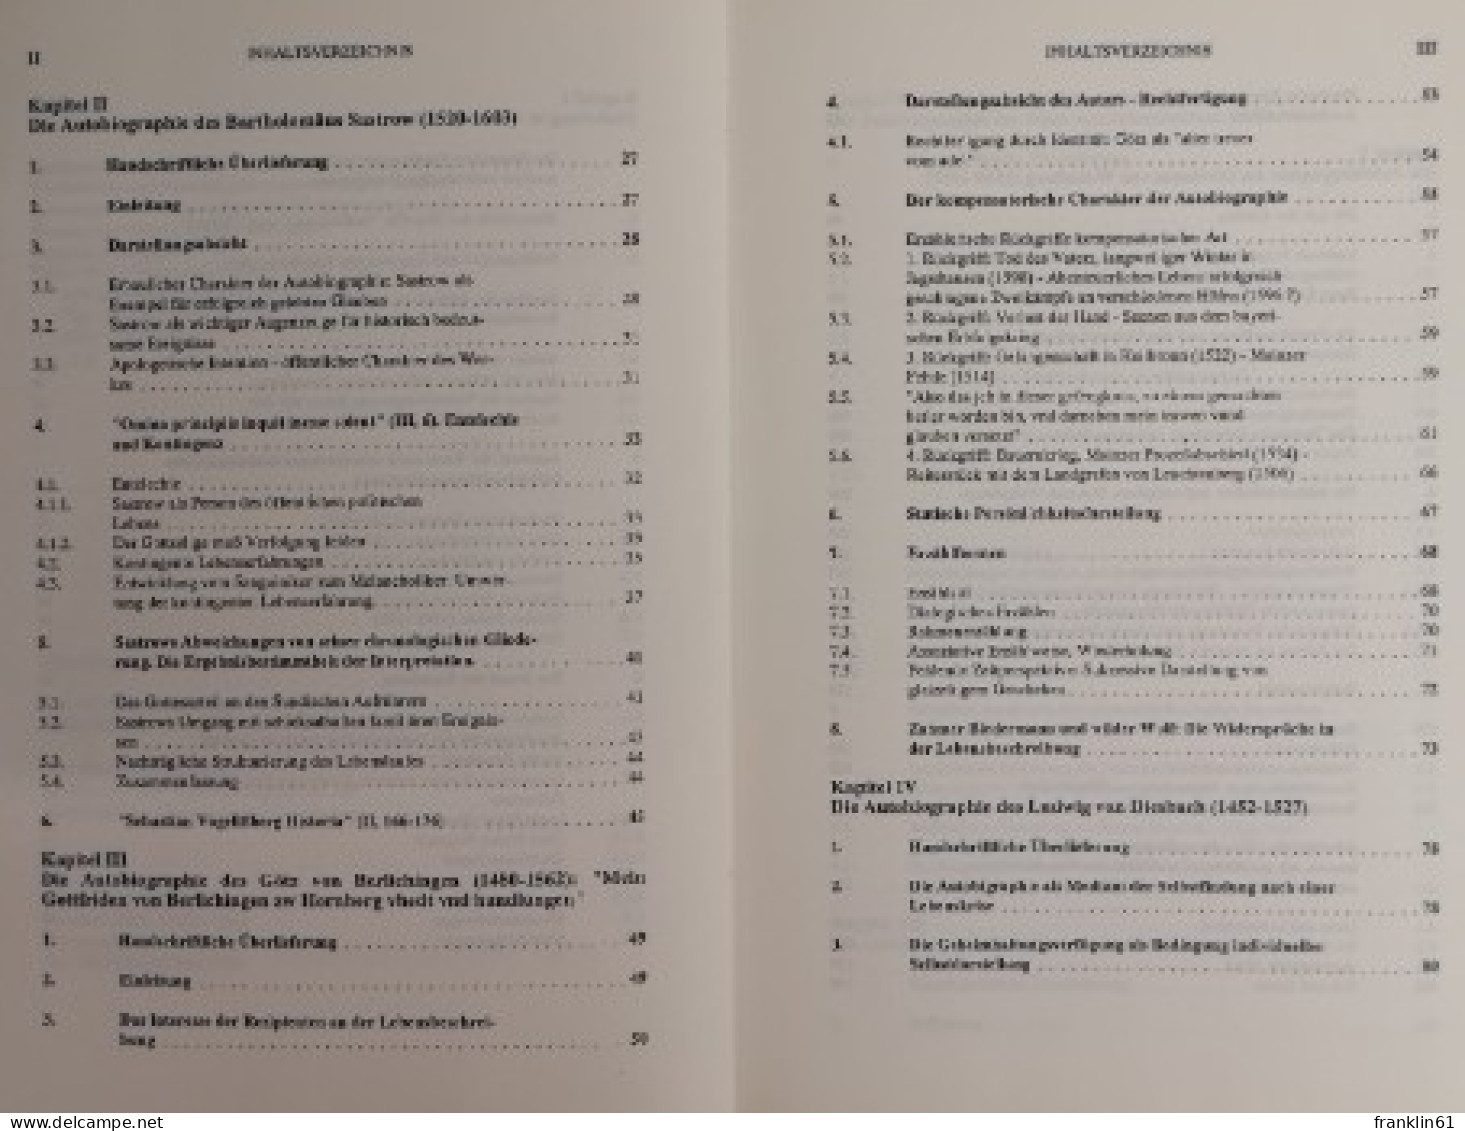 Erzählform und Persönlichkeitsdarstellung in deutschsprachigen Autobiographien des 16. Jahrhunderts. Ein Bei